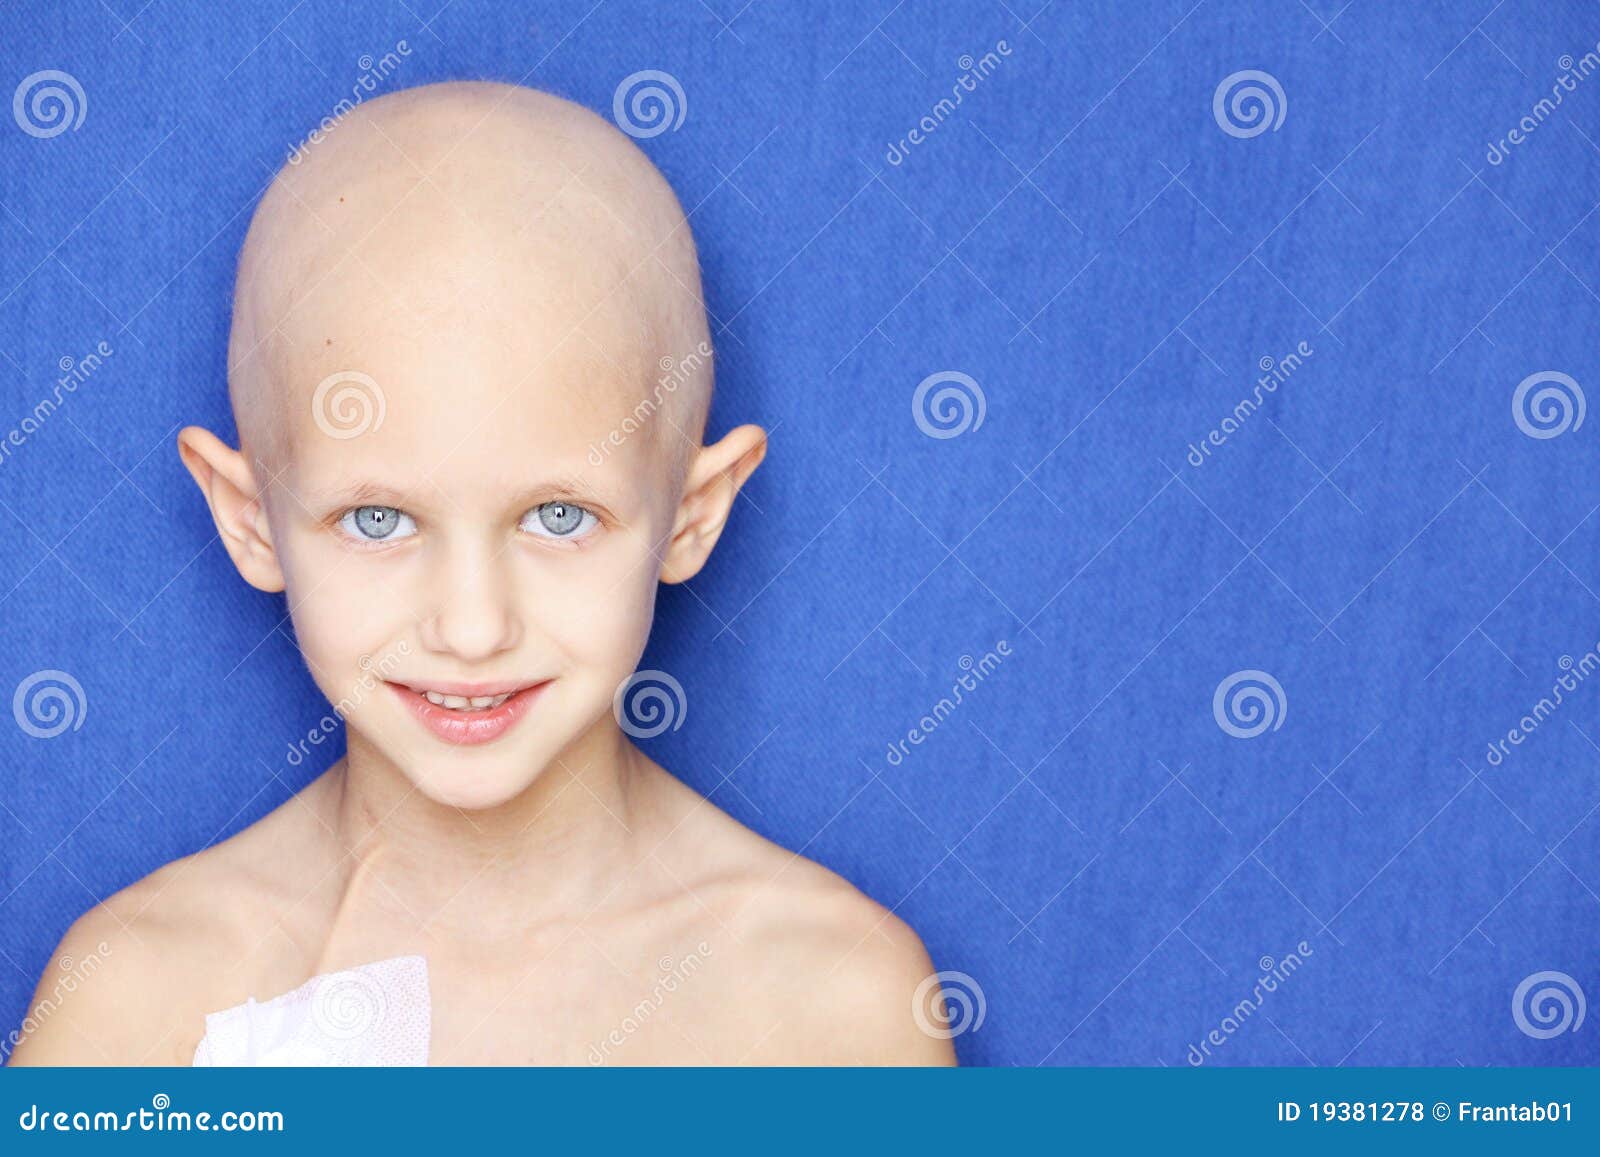 li boy with cancer